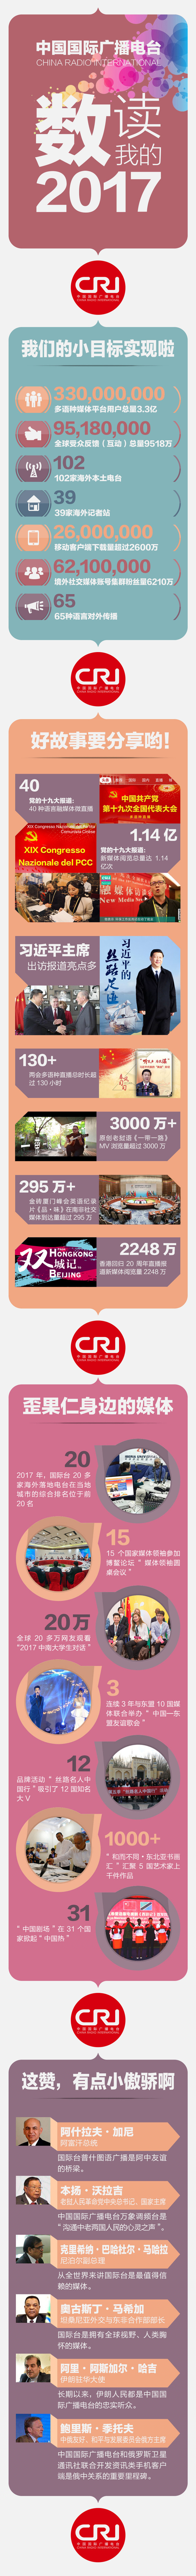 数读中国国际广播电台的2017